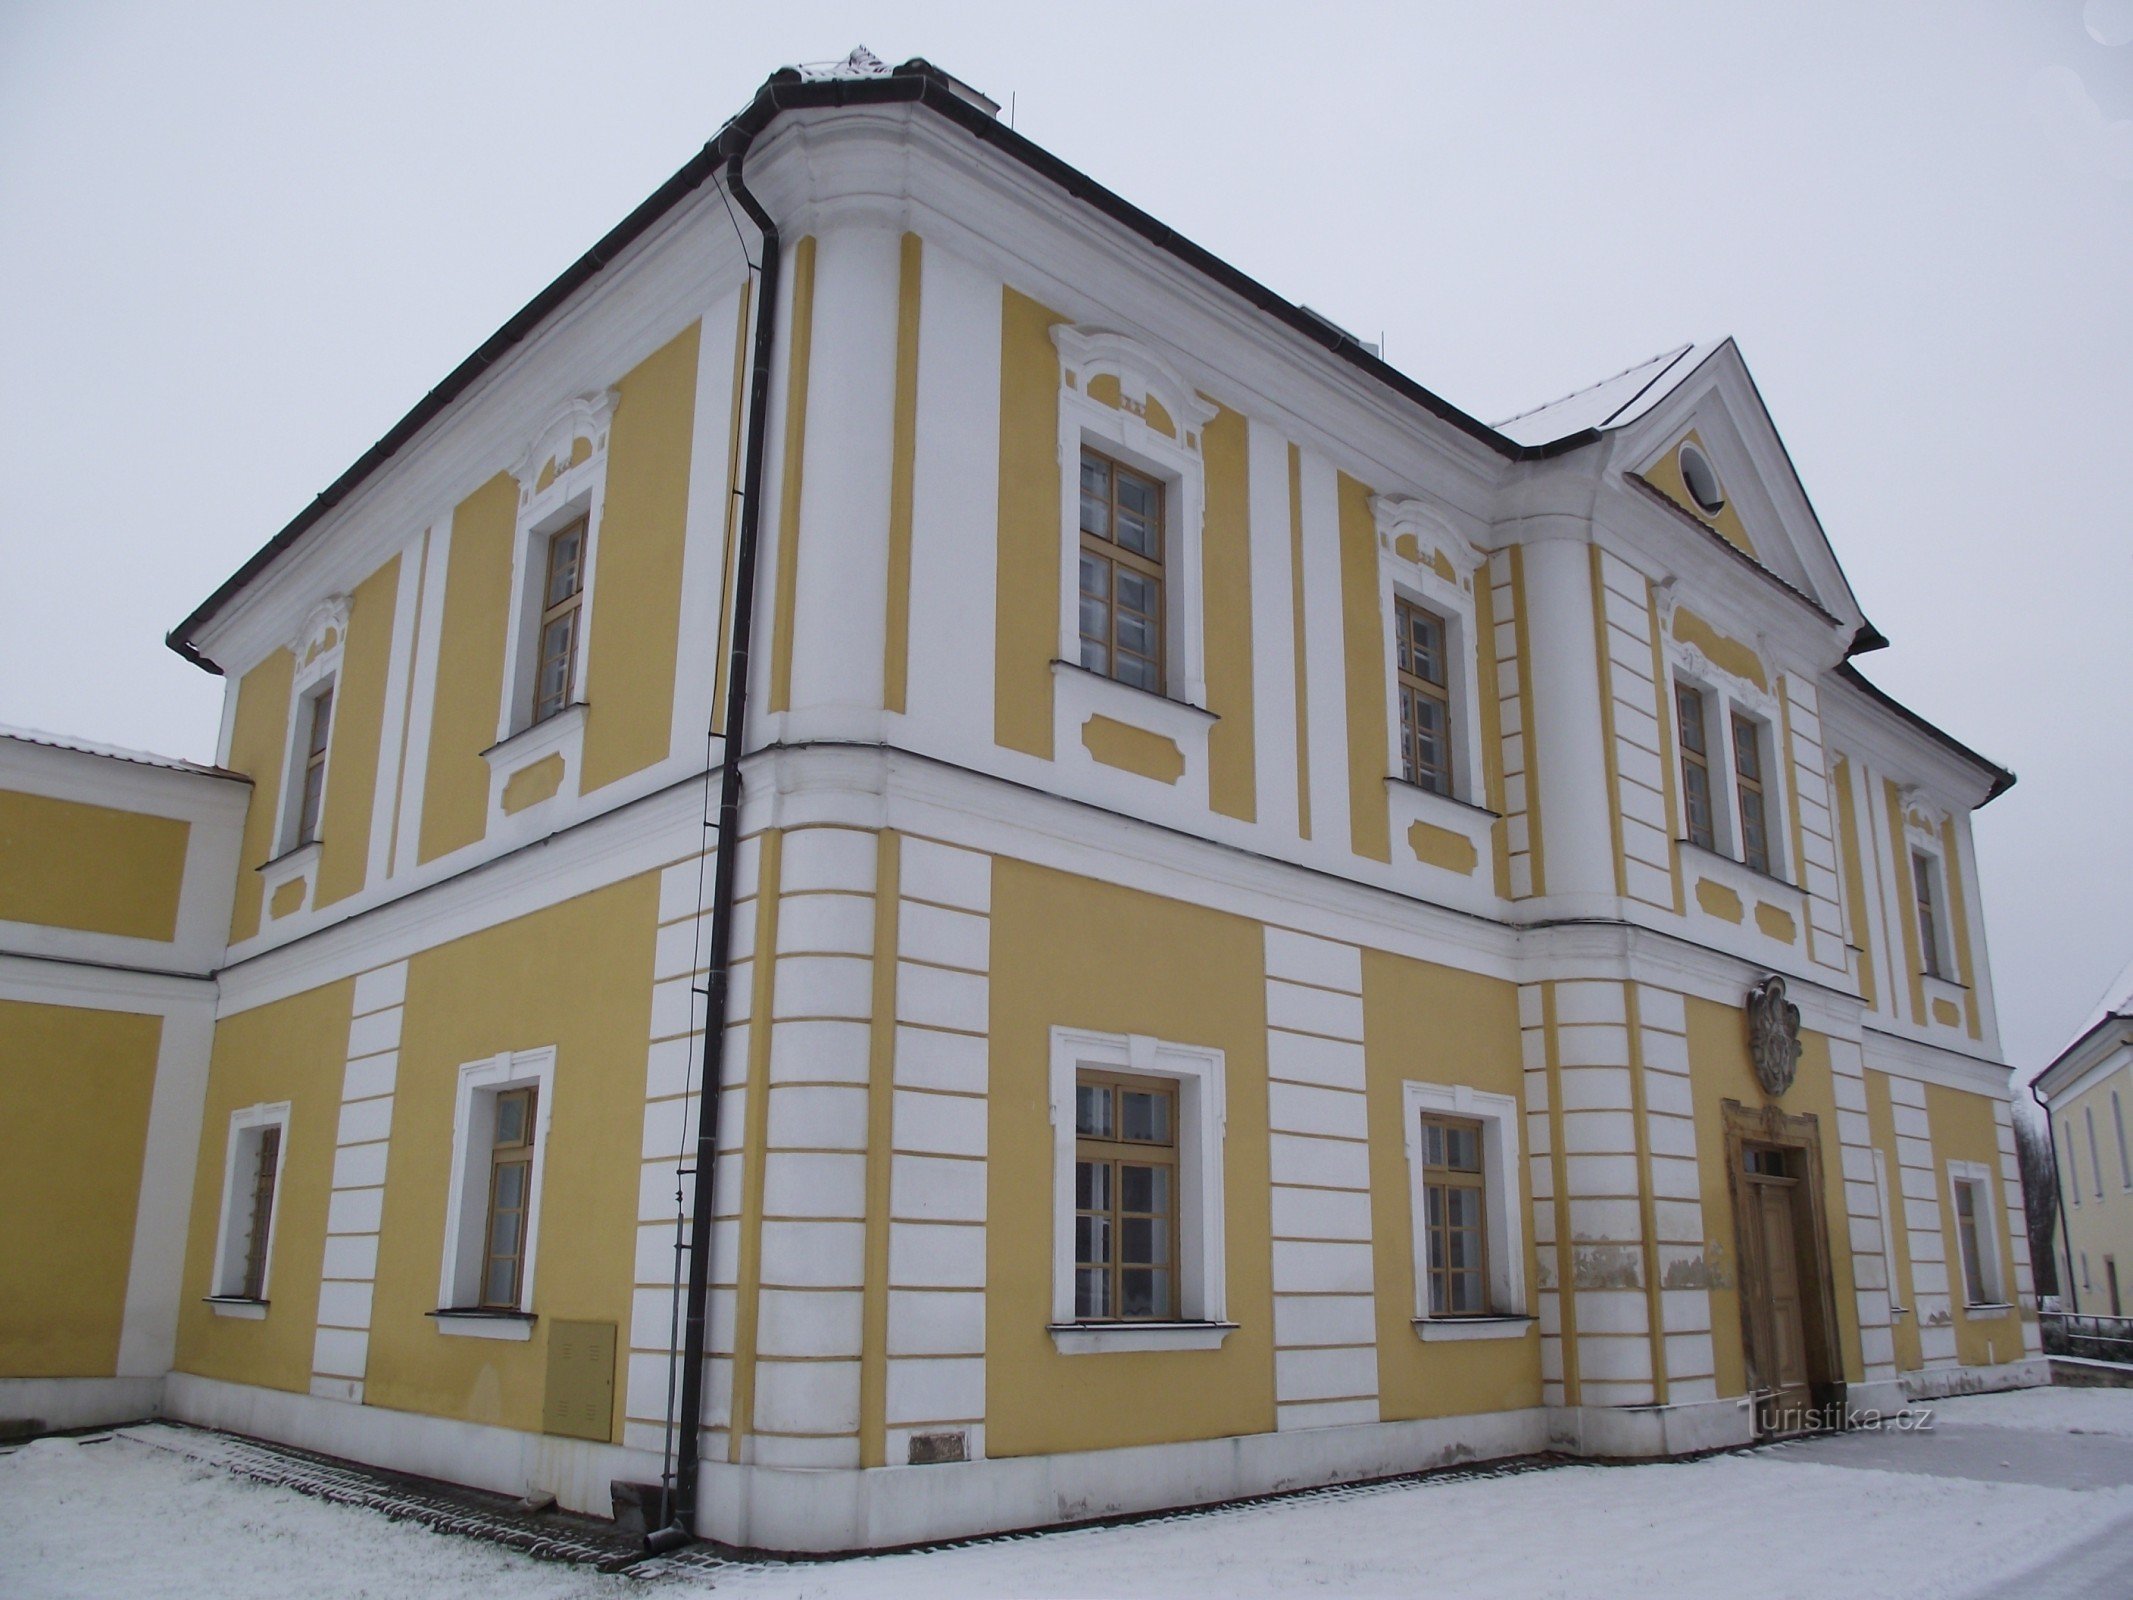 Cetkovice – kastélynak nevezett paplak (vagy paplakként szolgáló barokk kastély?)